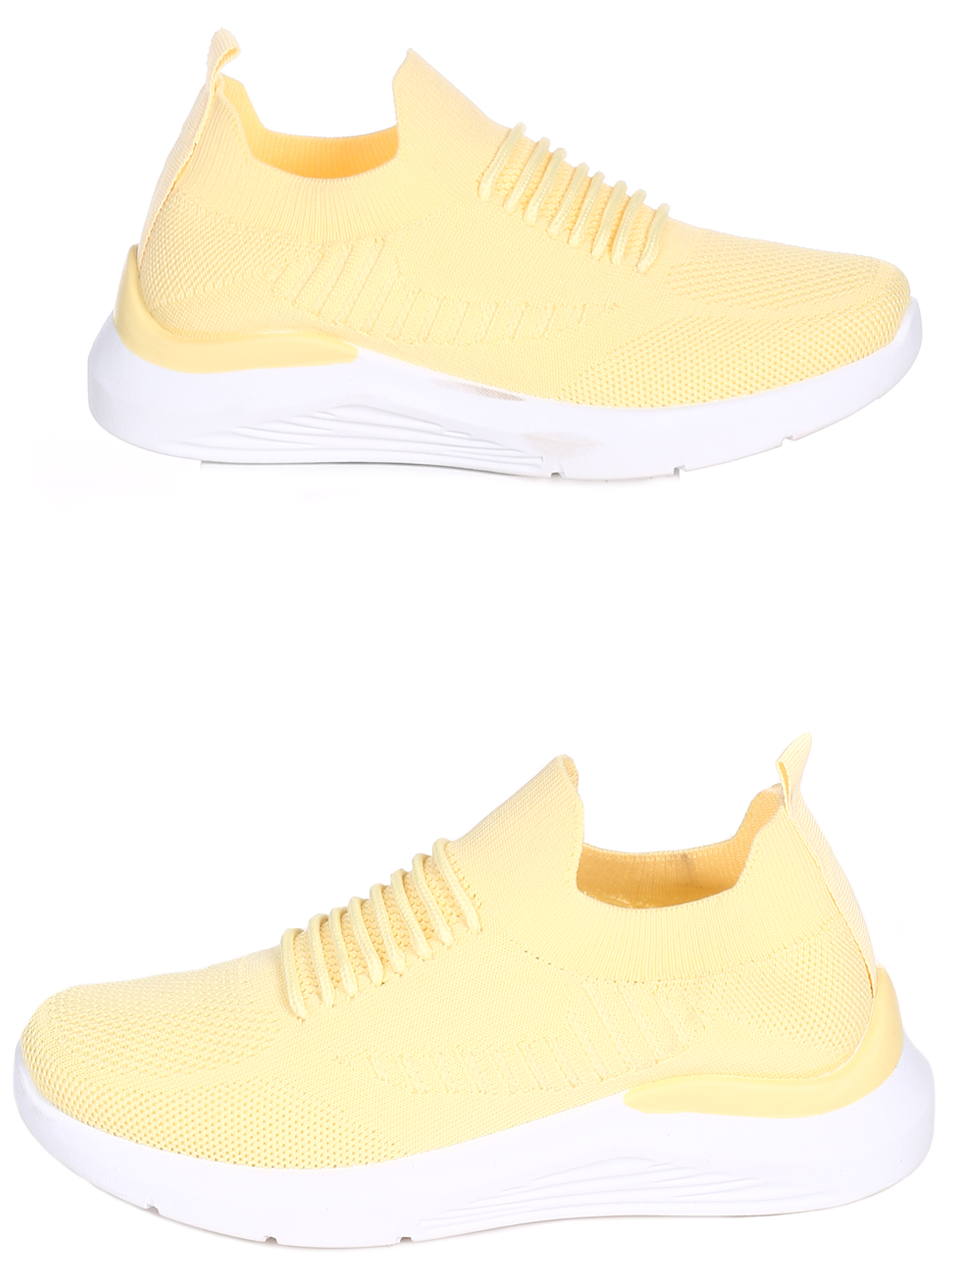 Ежедневни дамски обувки в жълто 3U-22049 yellow